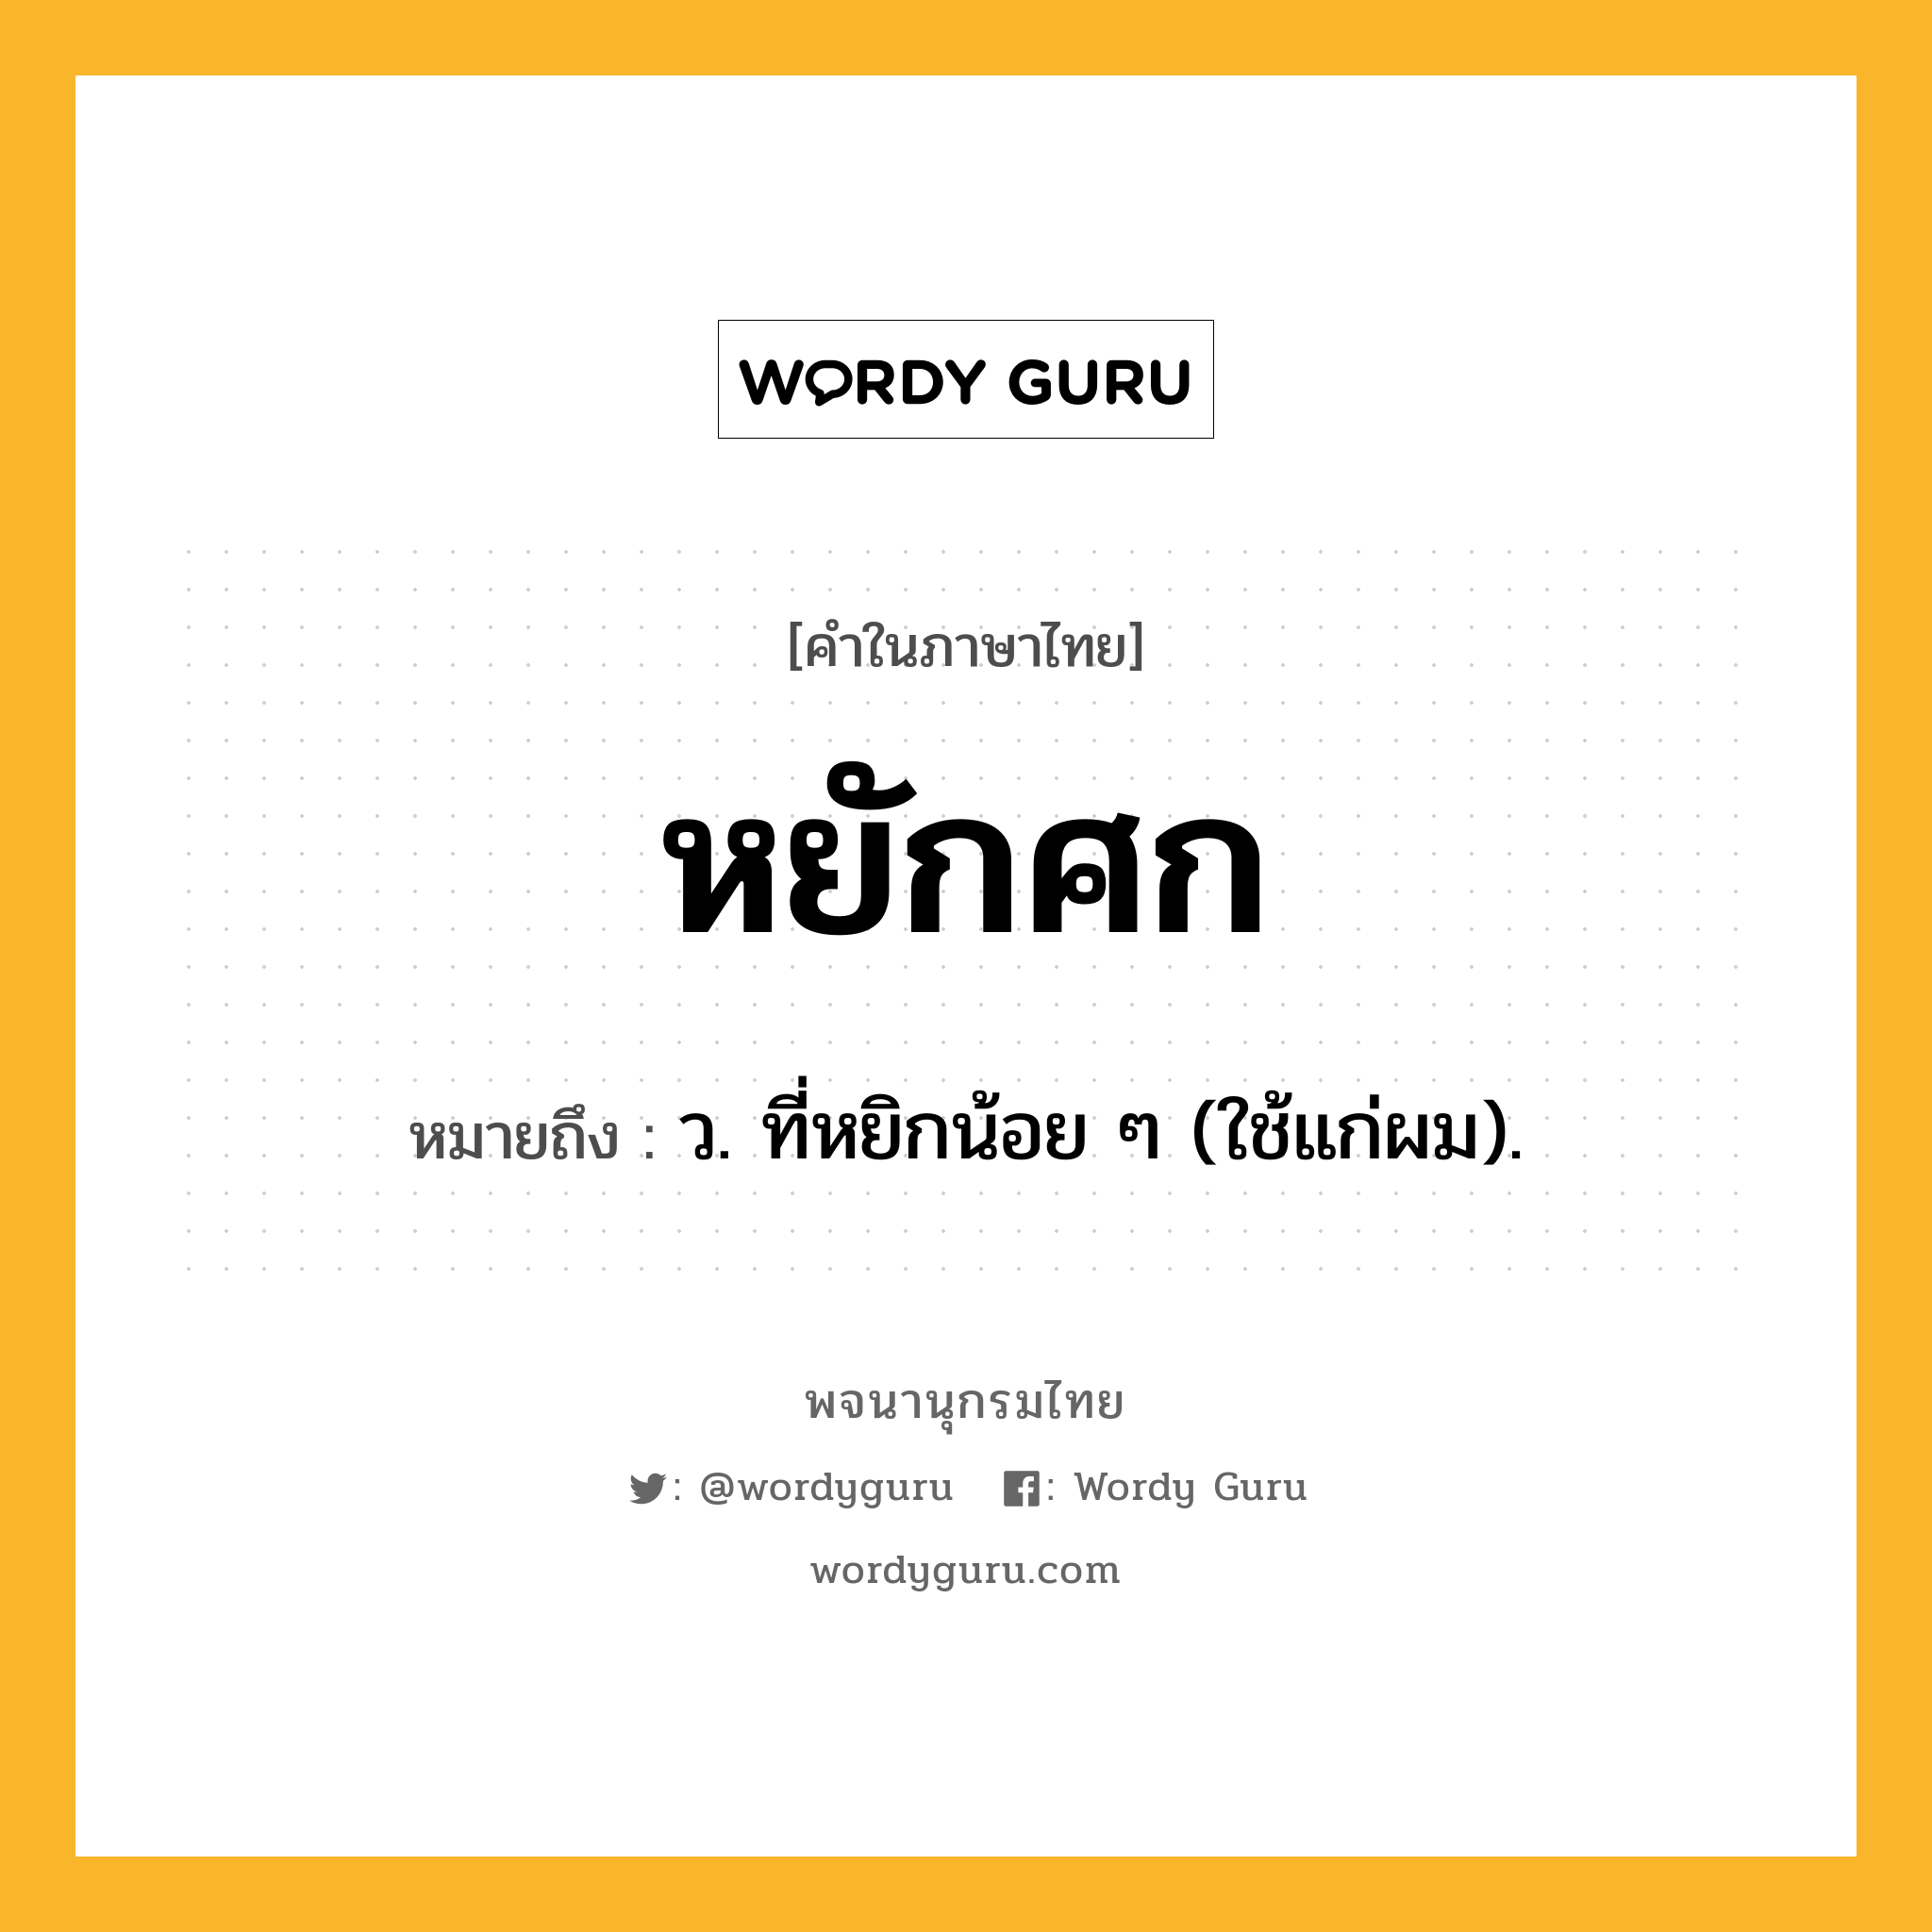 หยักศก หมายถึงอะไร?, คำในภาษาไทย หยักศก หมายถึง ว. ที่หยิกน้อย ๆ (ใช้แก่ผม).